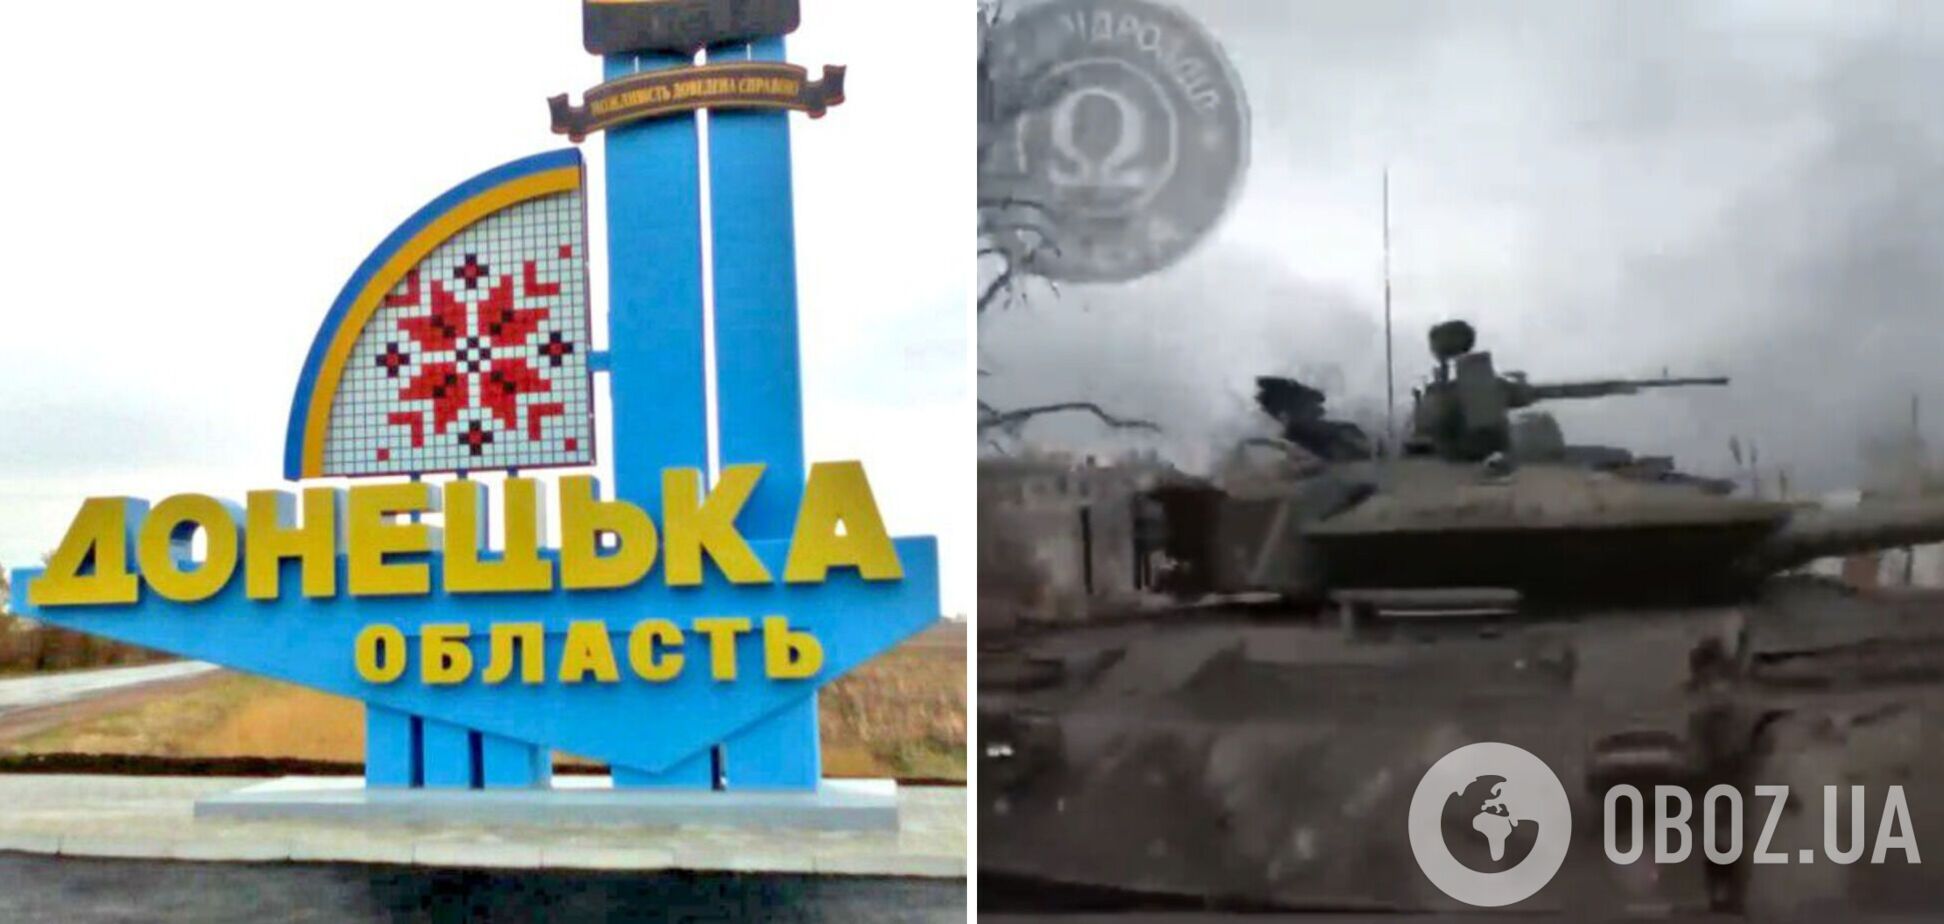 Спецпризначенці Нацгвардії затрофеїли новенький танк окупантів на околицях Вугледара. Відео